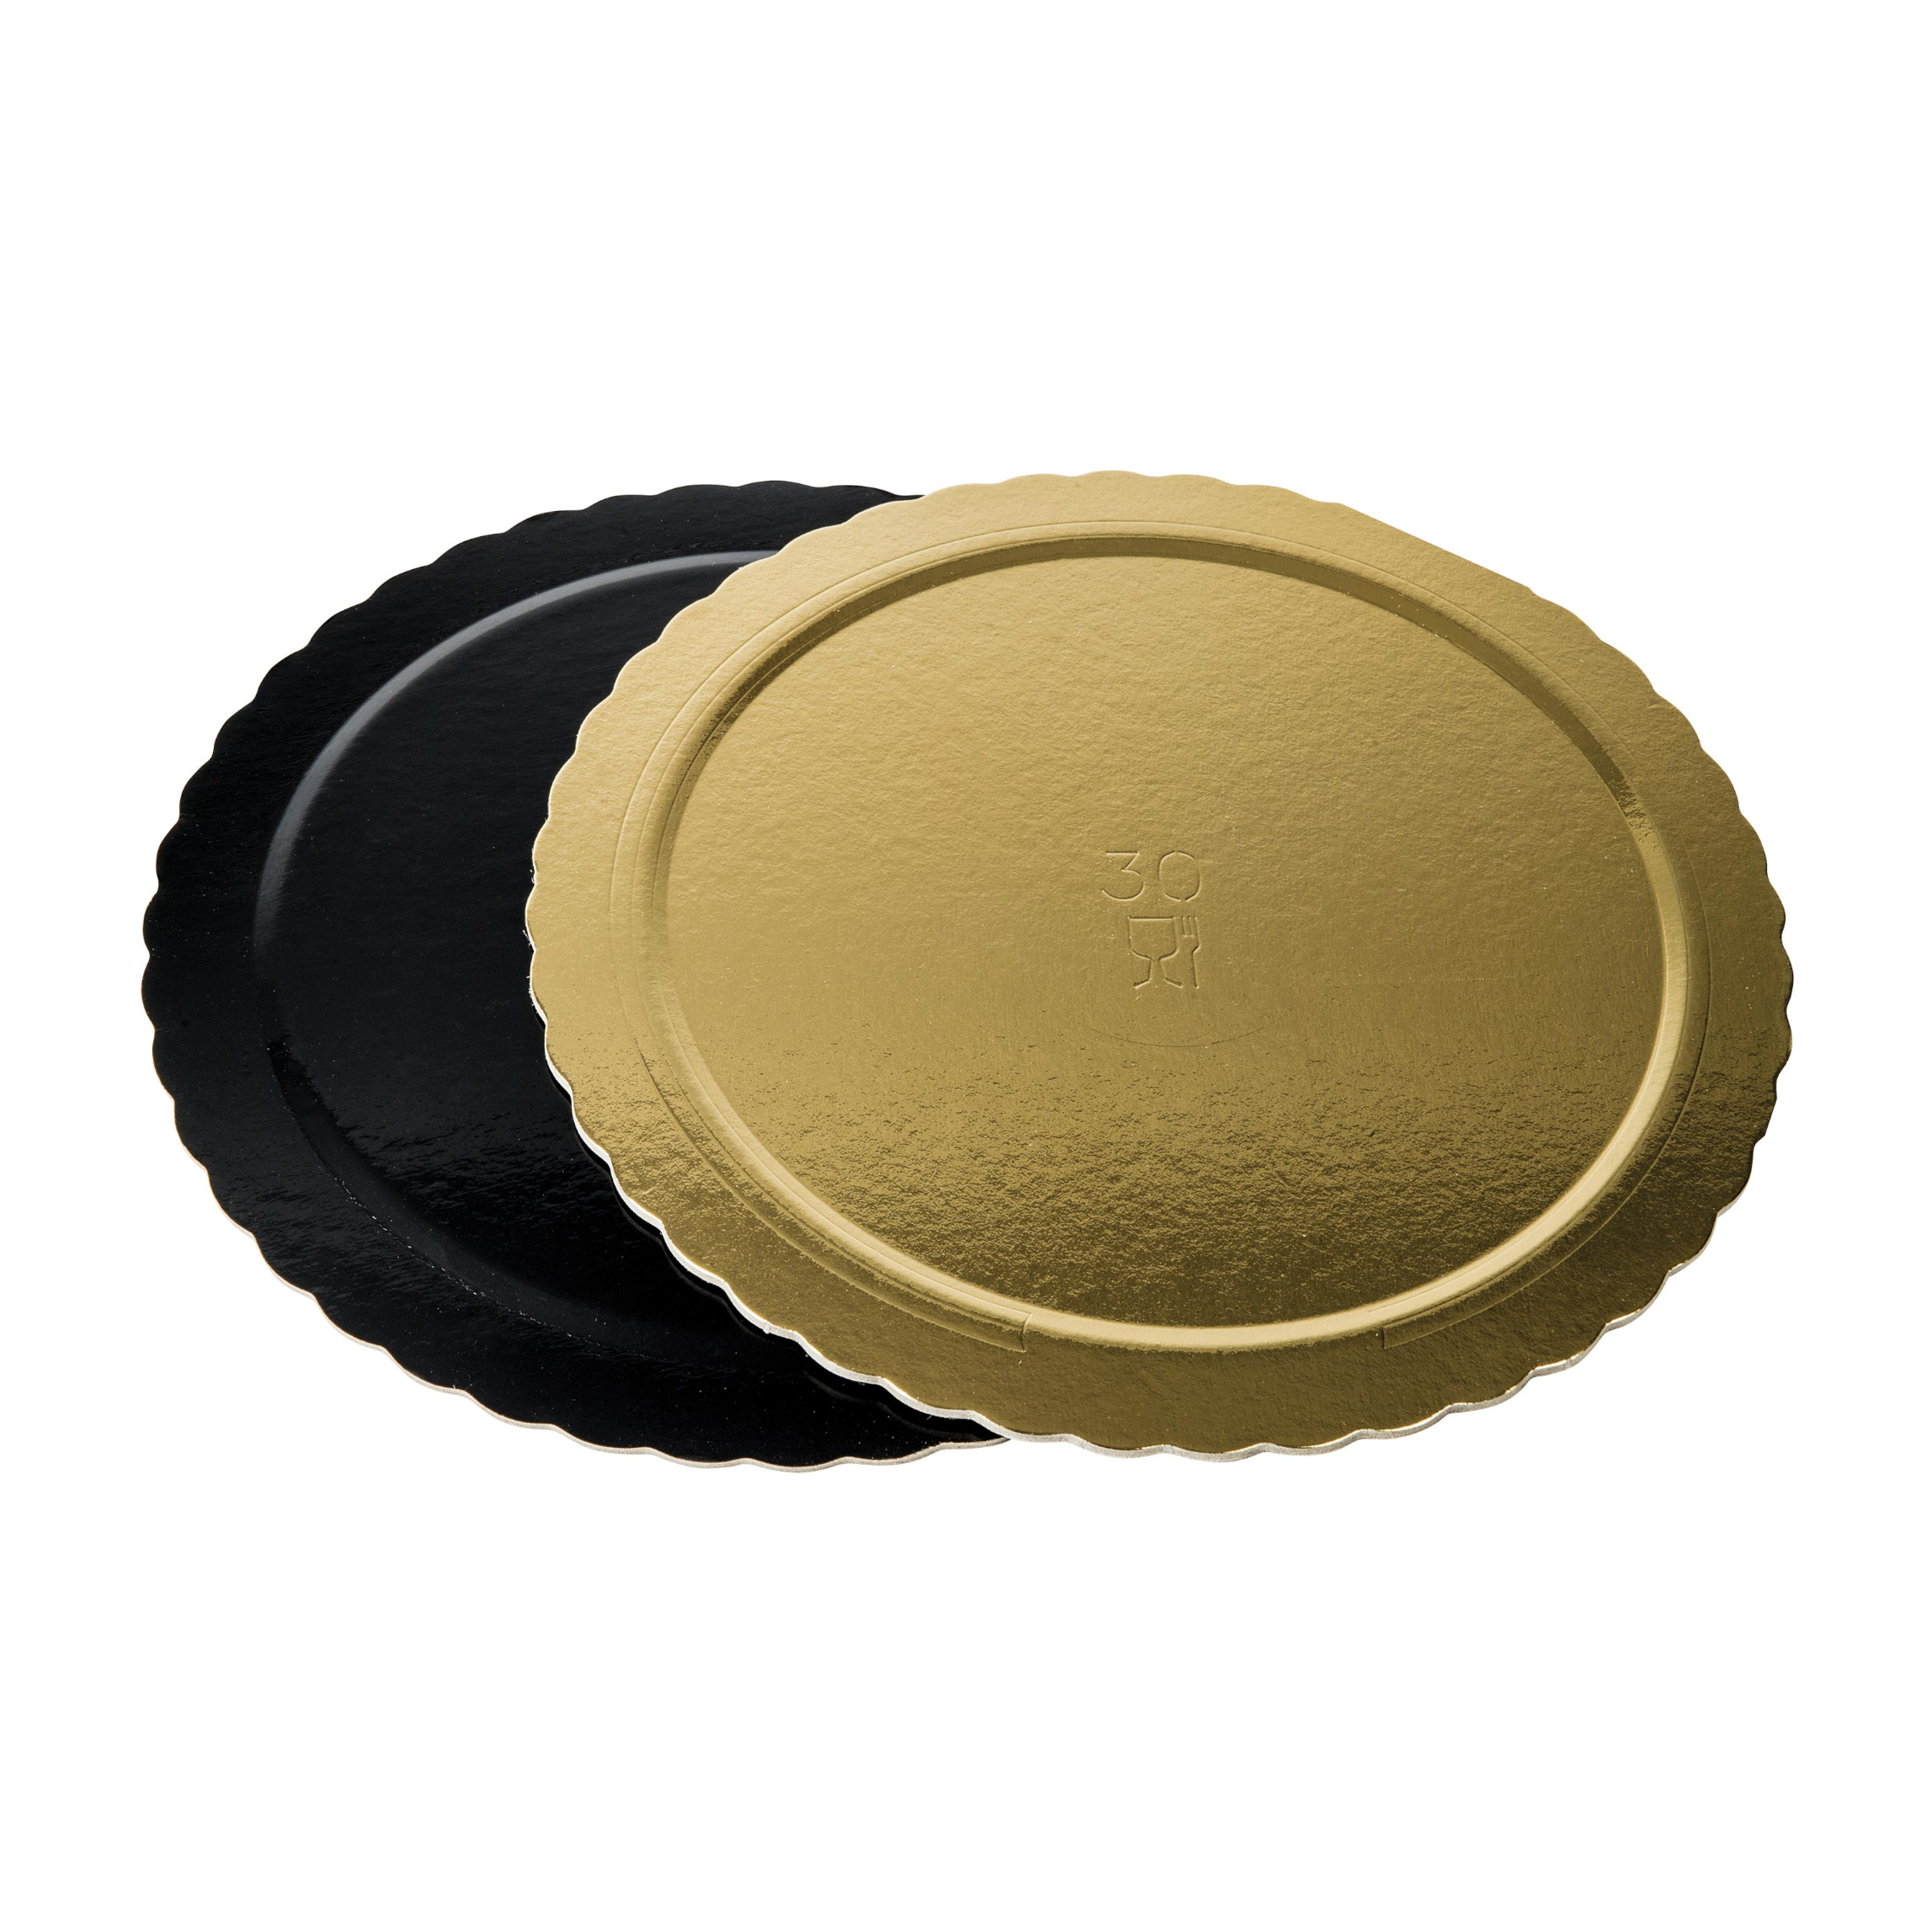 Dischi sottotorta kappati oro/nero 28cm pacchetto da 10kg